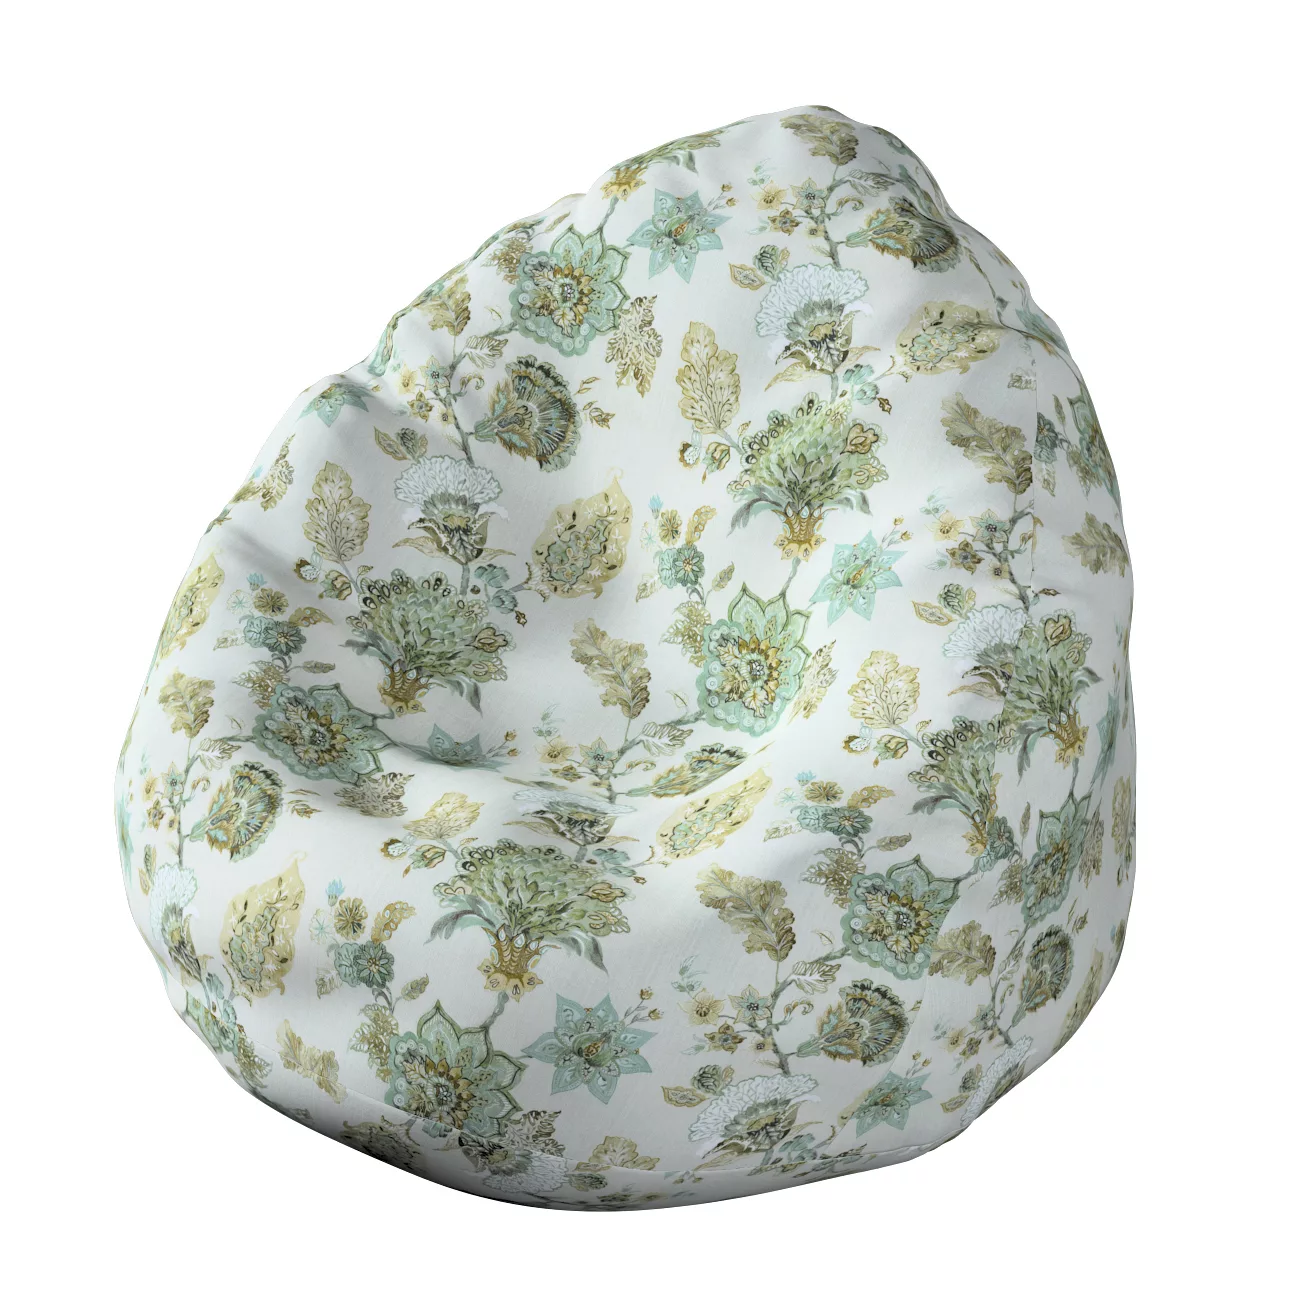 Bezug für Sitzsack, grau-beige, Bezug für Sitzsack Ø50 x 85 cm, Flowers (14 günstig online kaufen